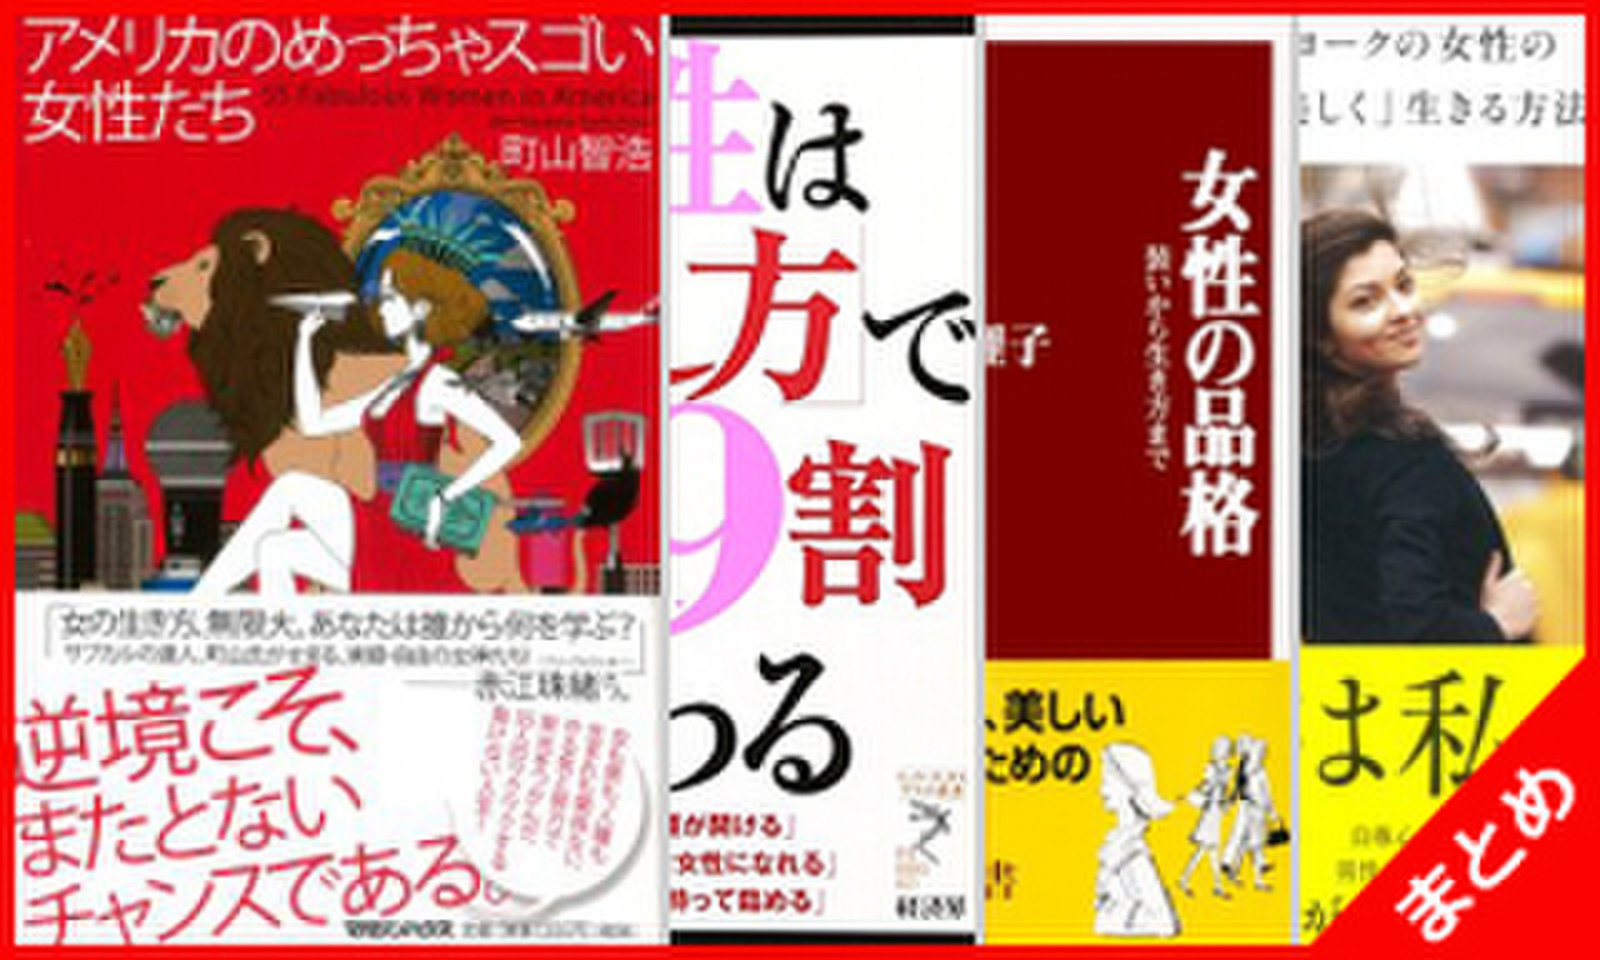 スゴイ女性たち 日本最大級のオーディオブック配信サービス audiobook.jp